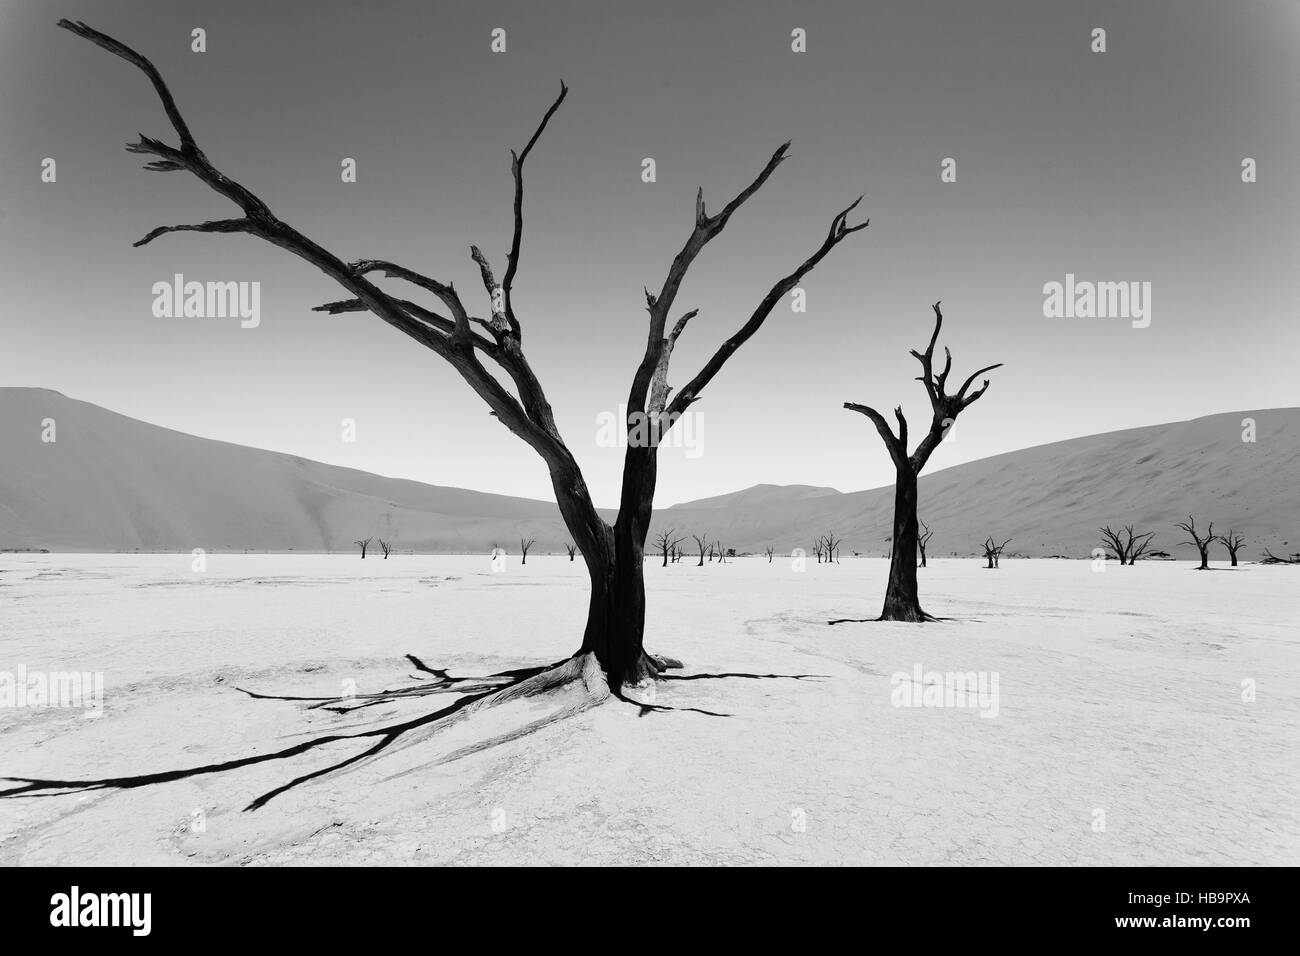 Una vista dal Dead Vlei, Sossusvlei Namibia. Immagine alterata digitalmente intenzionalmente. In bianco e nero. Foto Stock